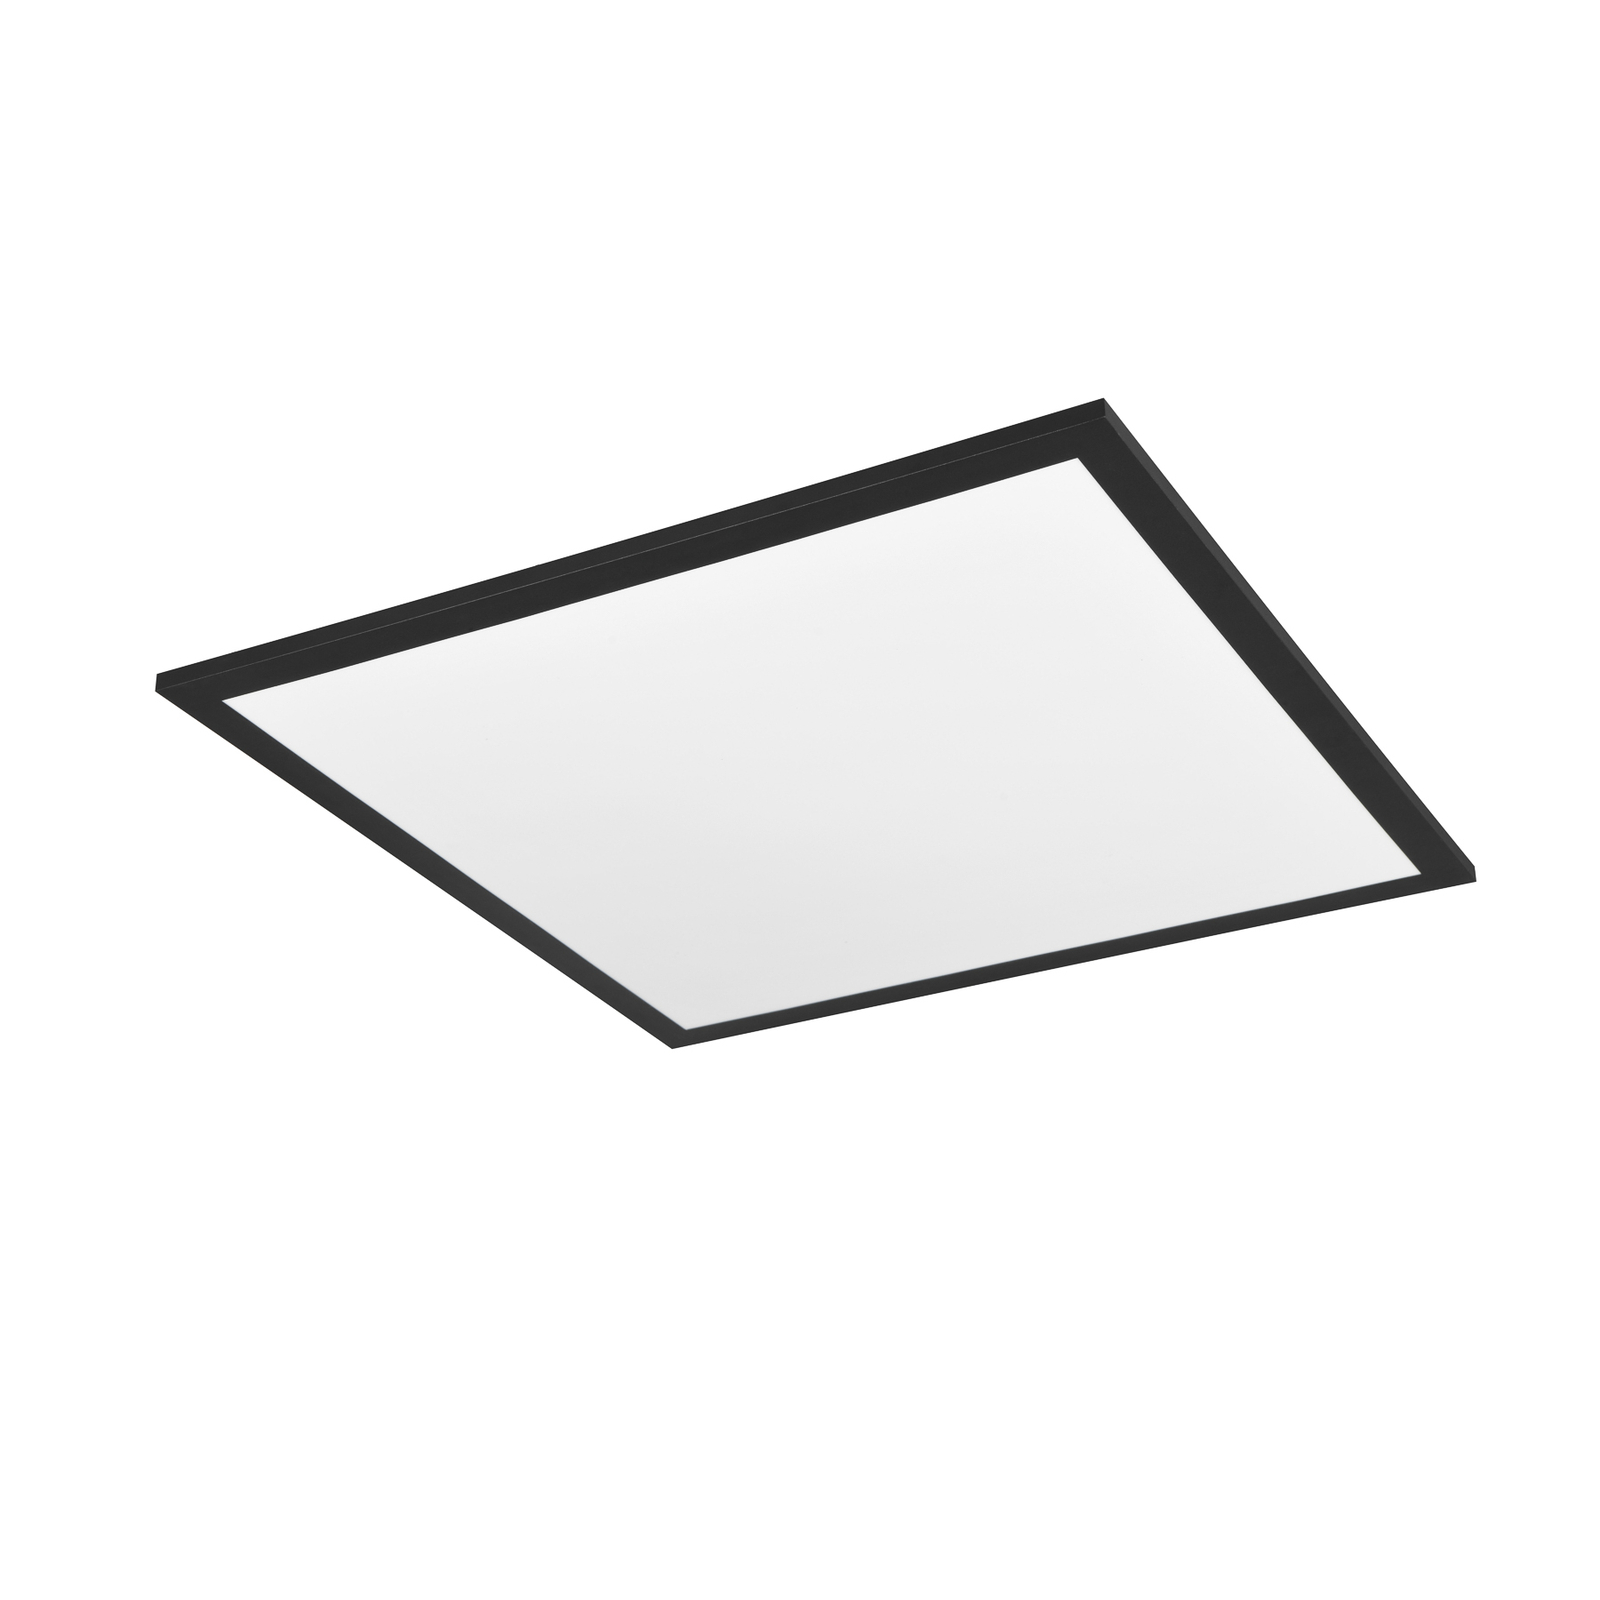 Beta LED ceiling light, length 44 cm, black, RGBW, CTT